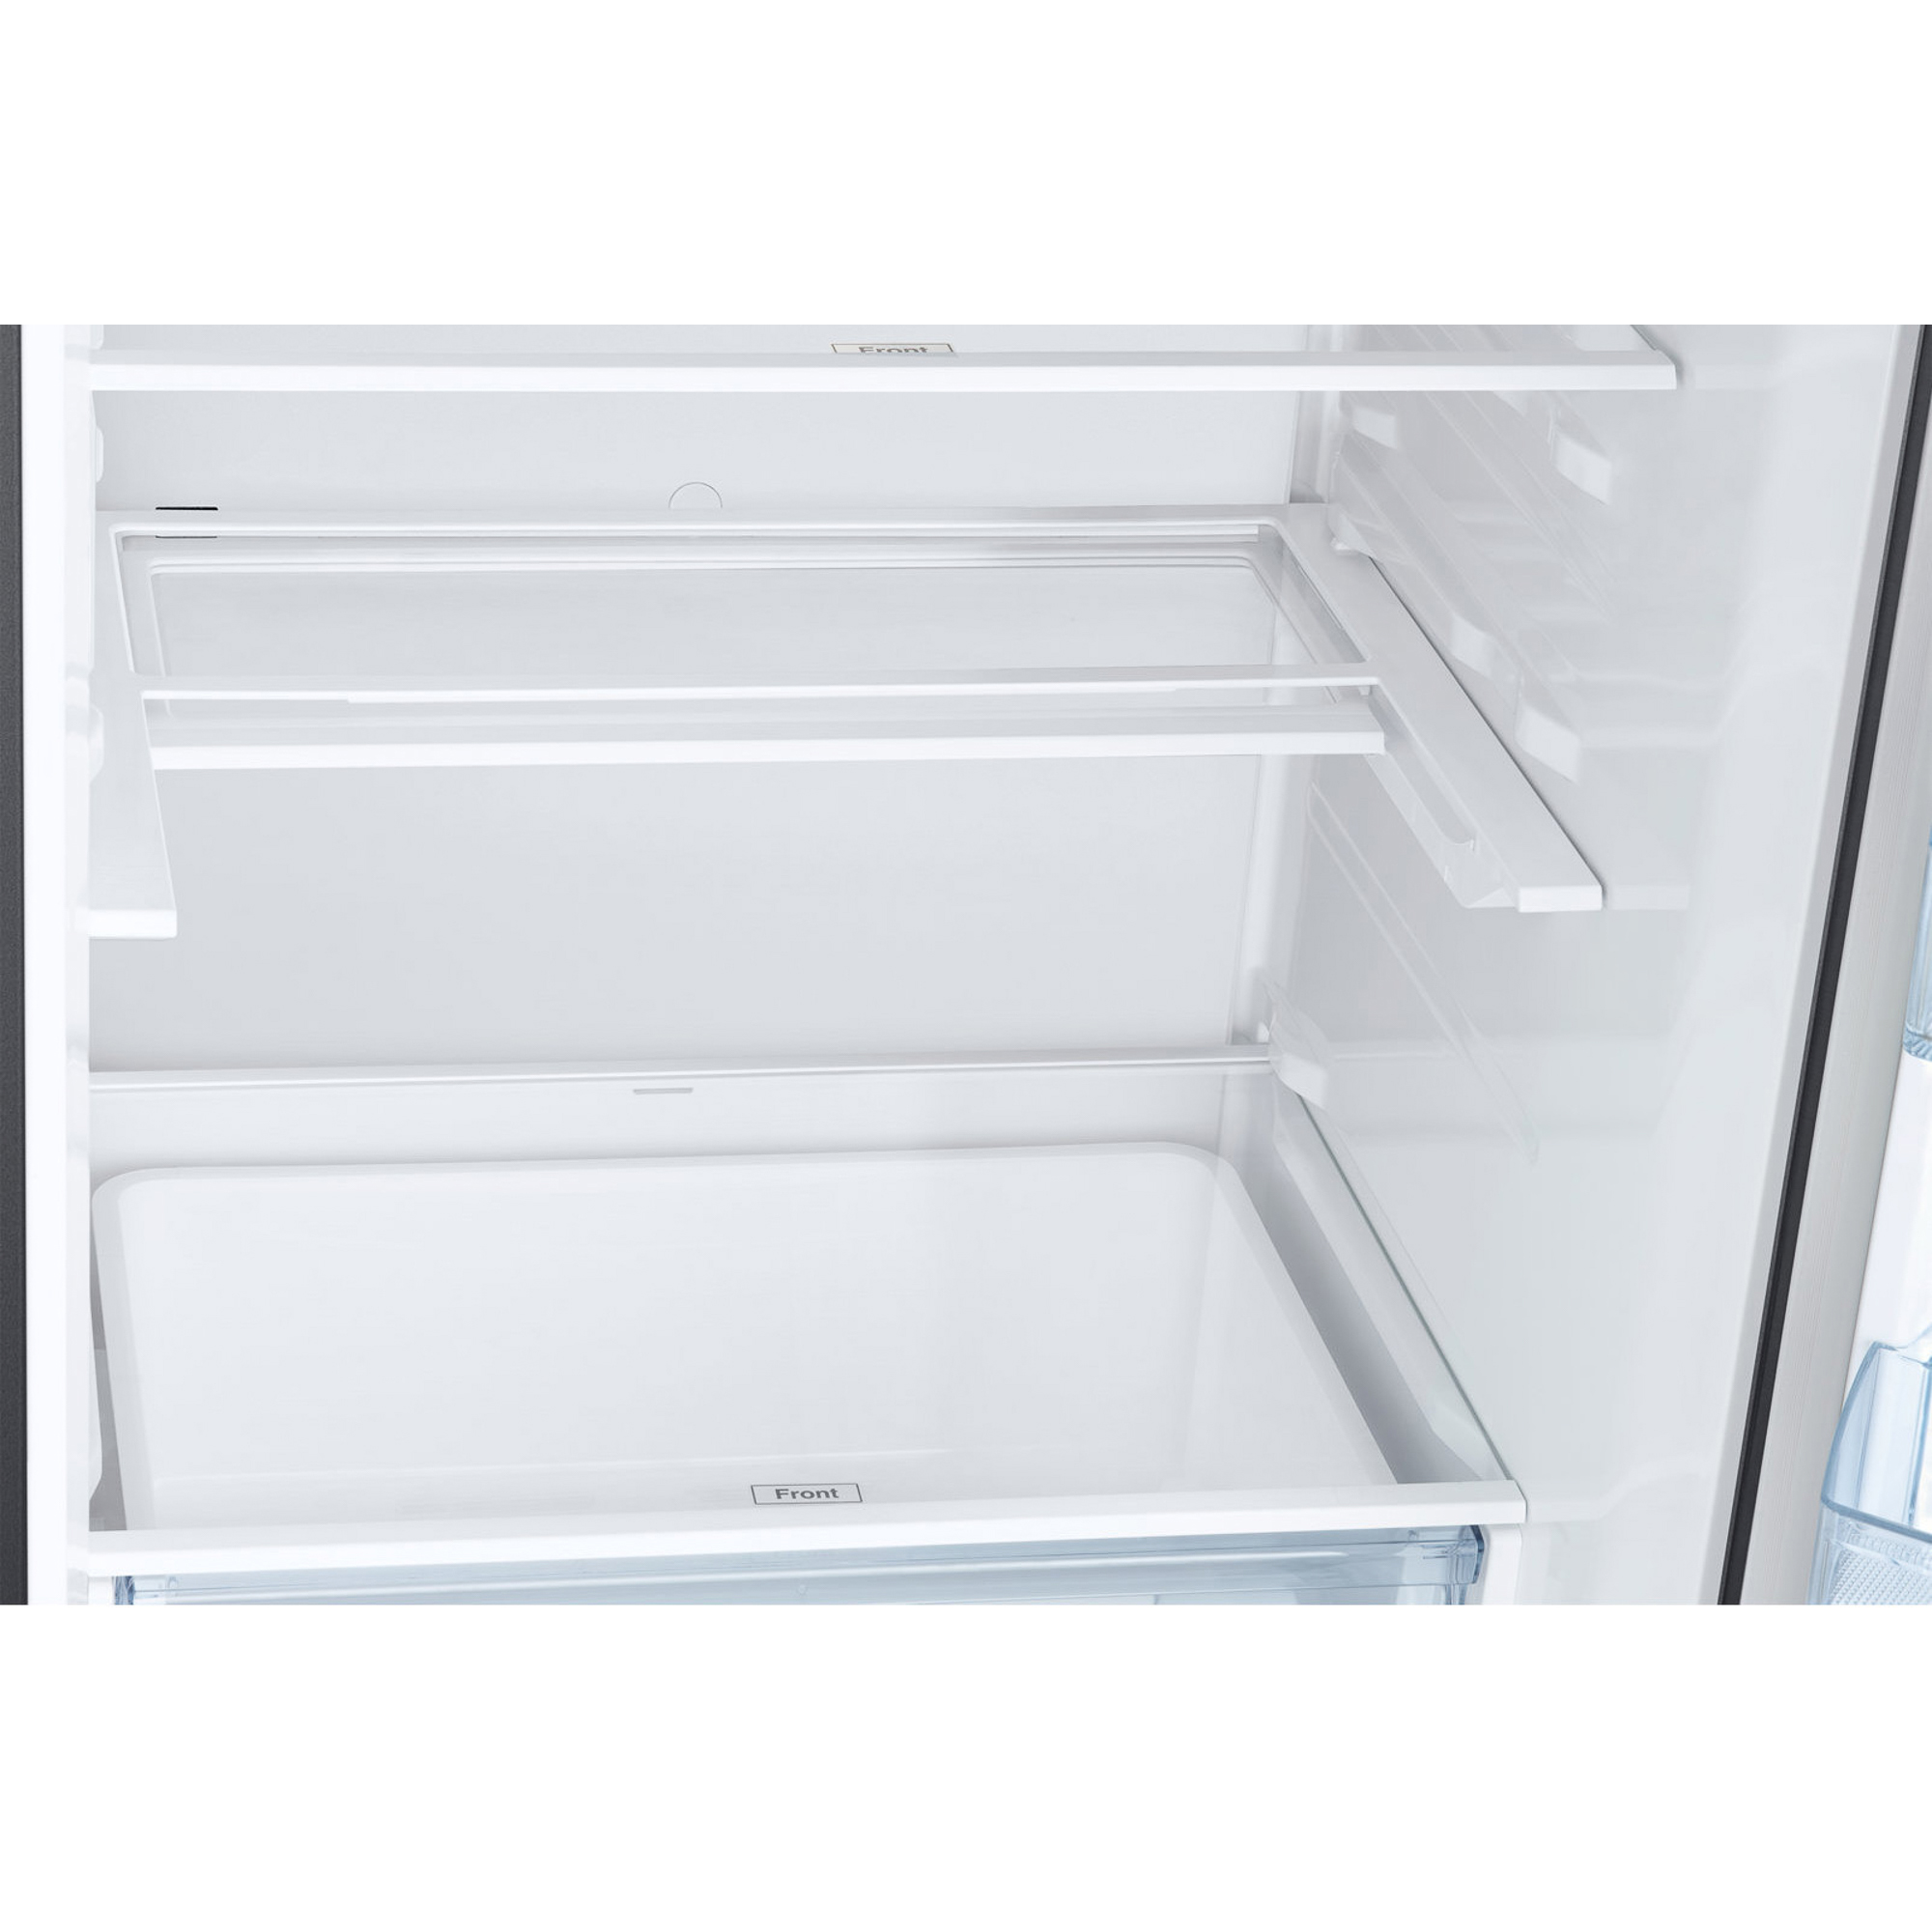 Холодильник Samsung RB34K6220S4 Silver, цвет серебристый RB34K6220S4/WT - фото 7